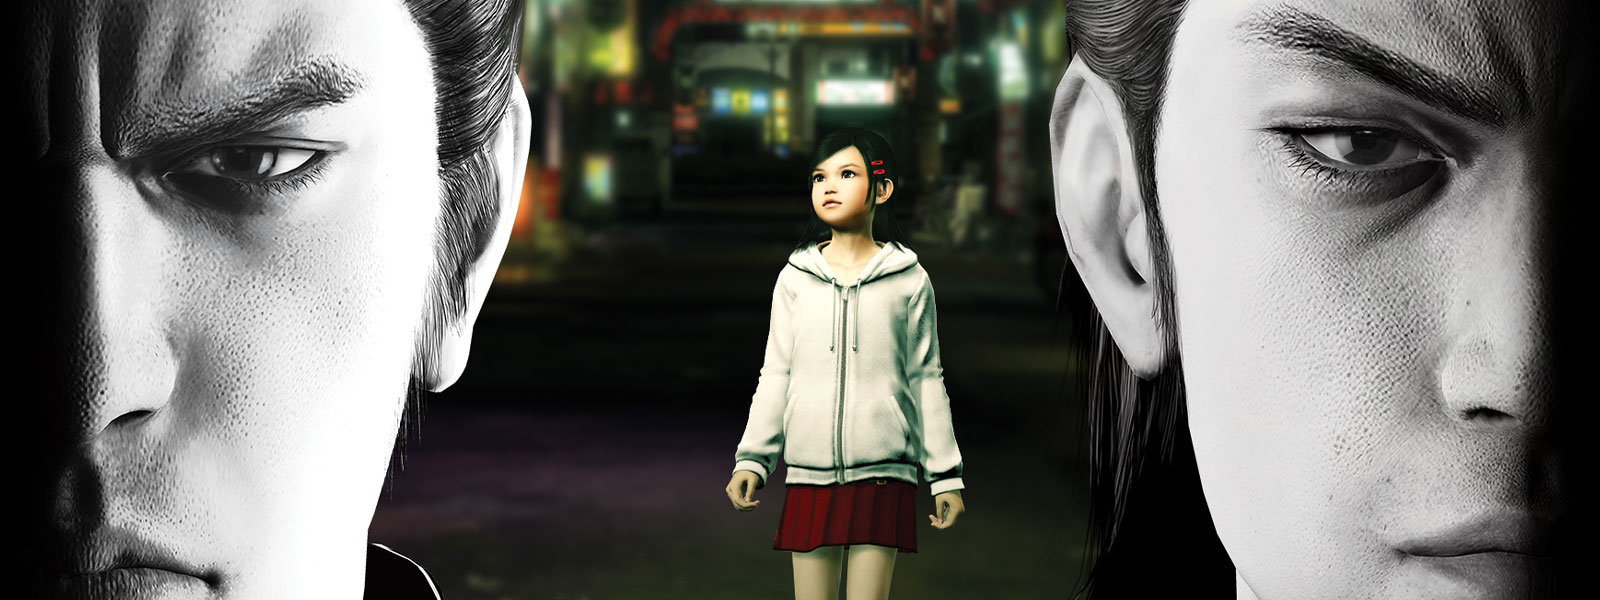 Deux personnages Yakuza regardent devant eux dʼun air sombre, tandis quʼune petite fille se tient dans la ville derrière eux.